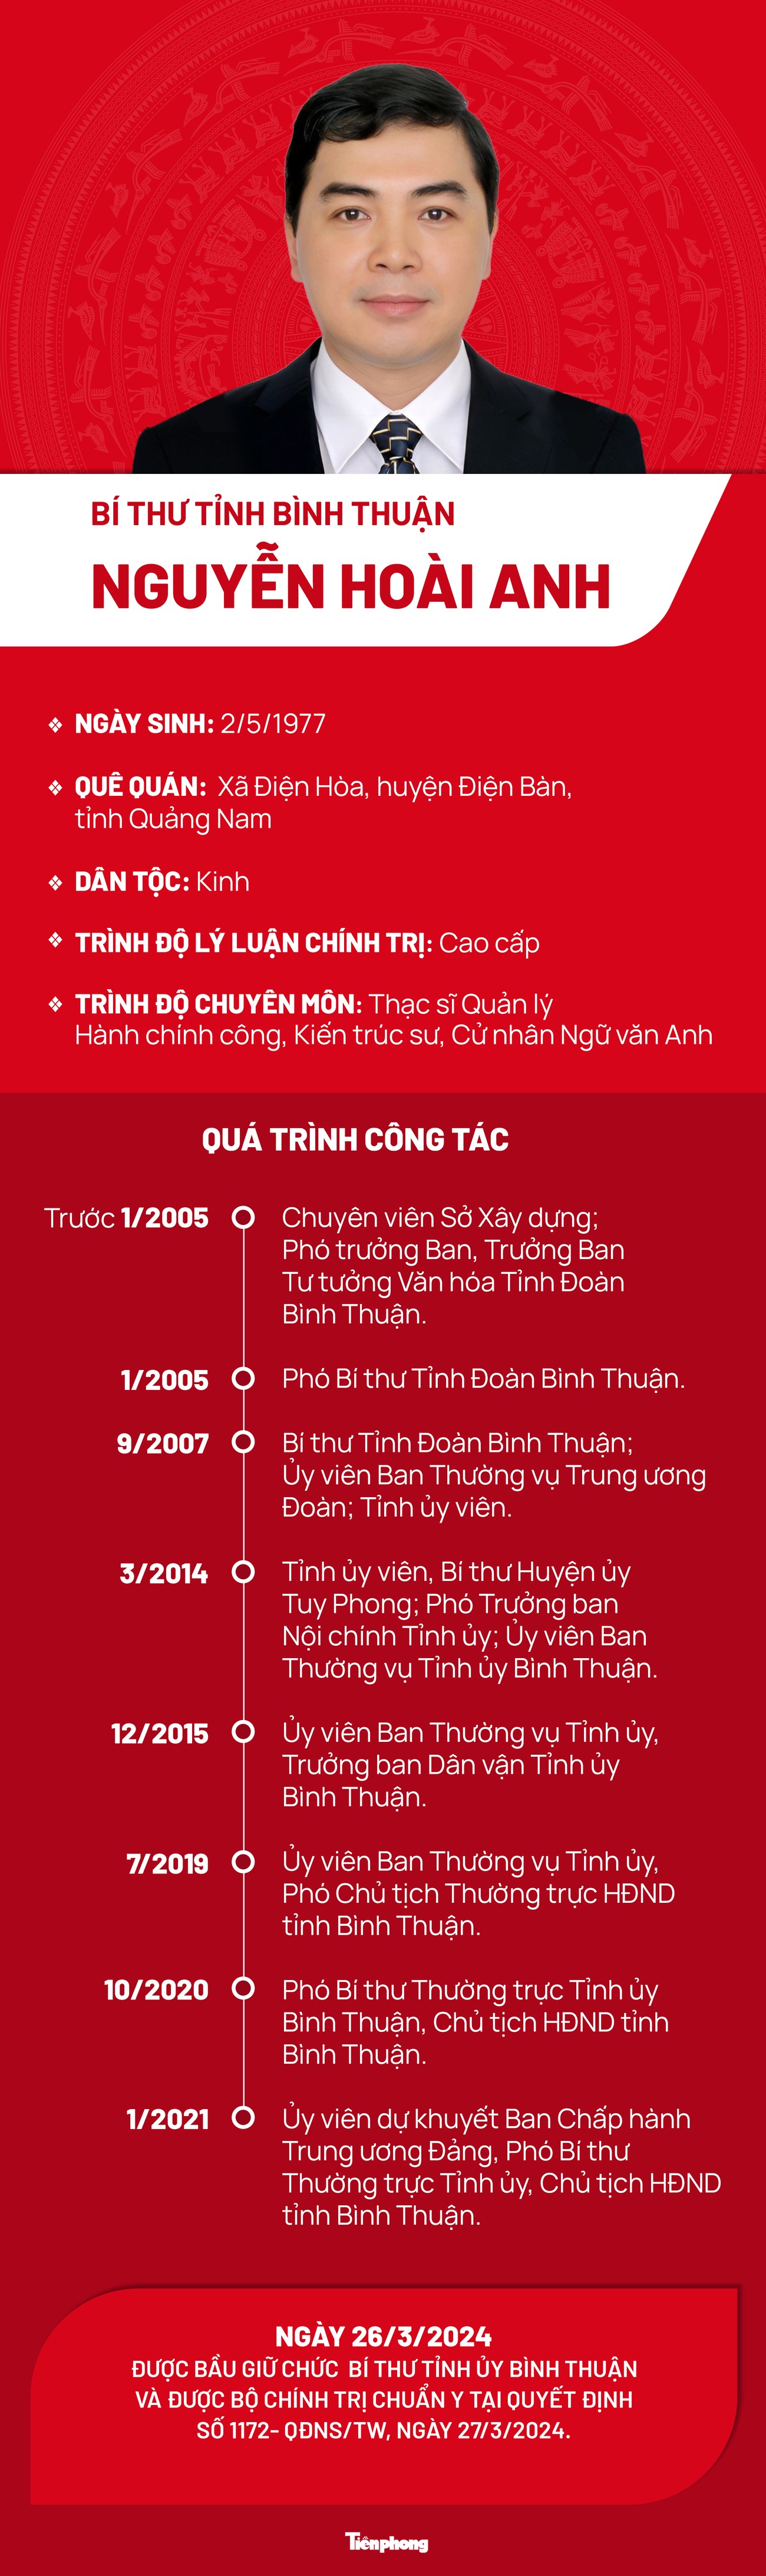 Chân dung tân Bí thư Tỉnh ủy Bình Thuận Nguyễn Hoài Anh- Ảnh 1.